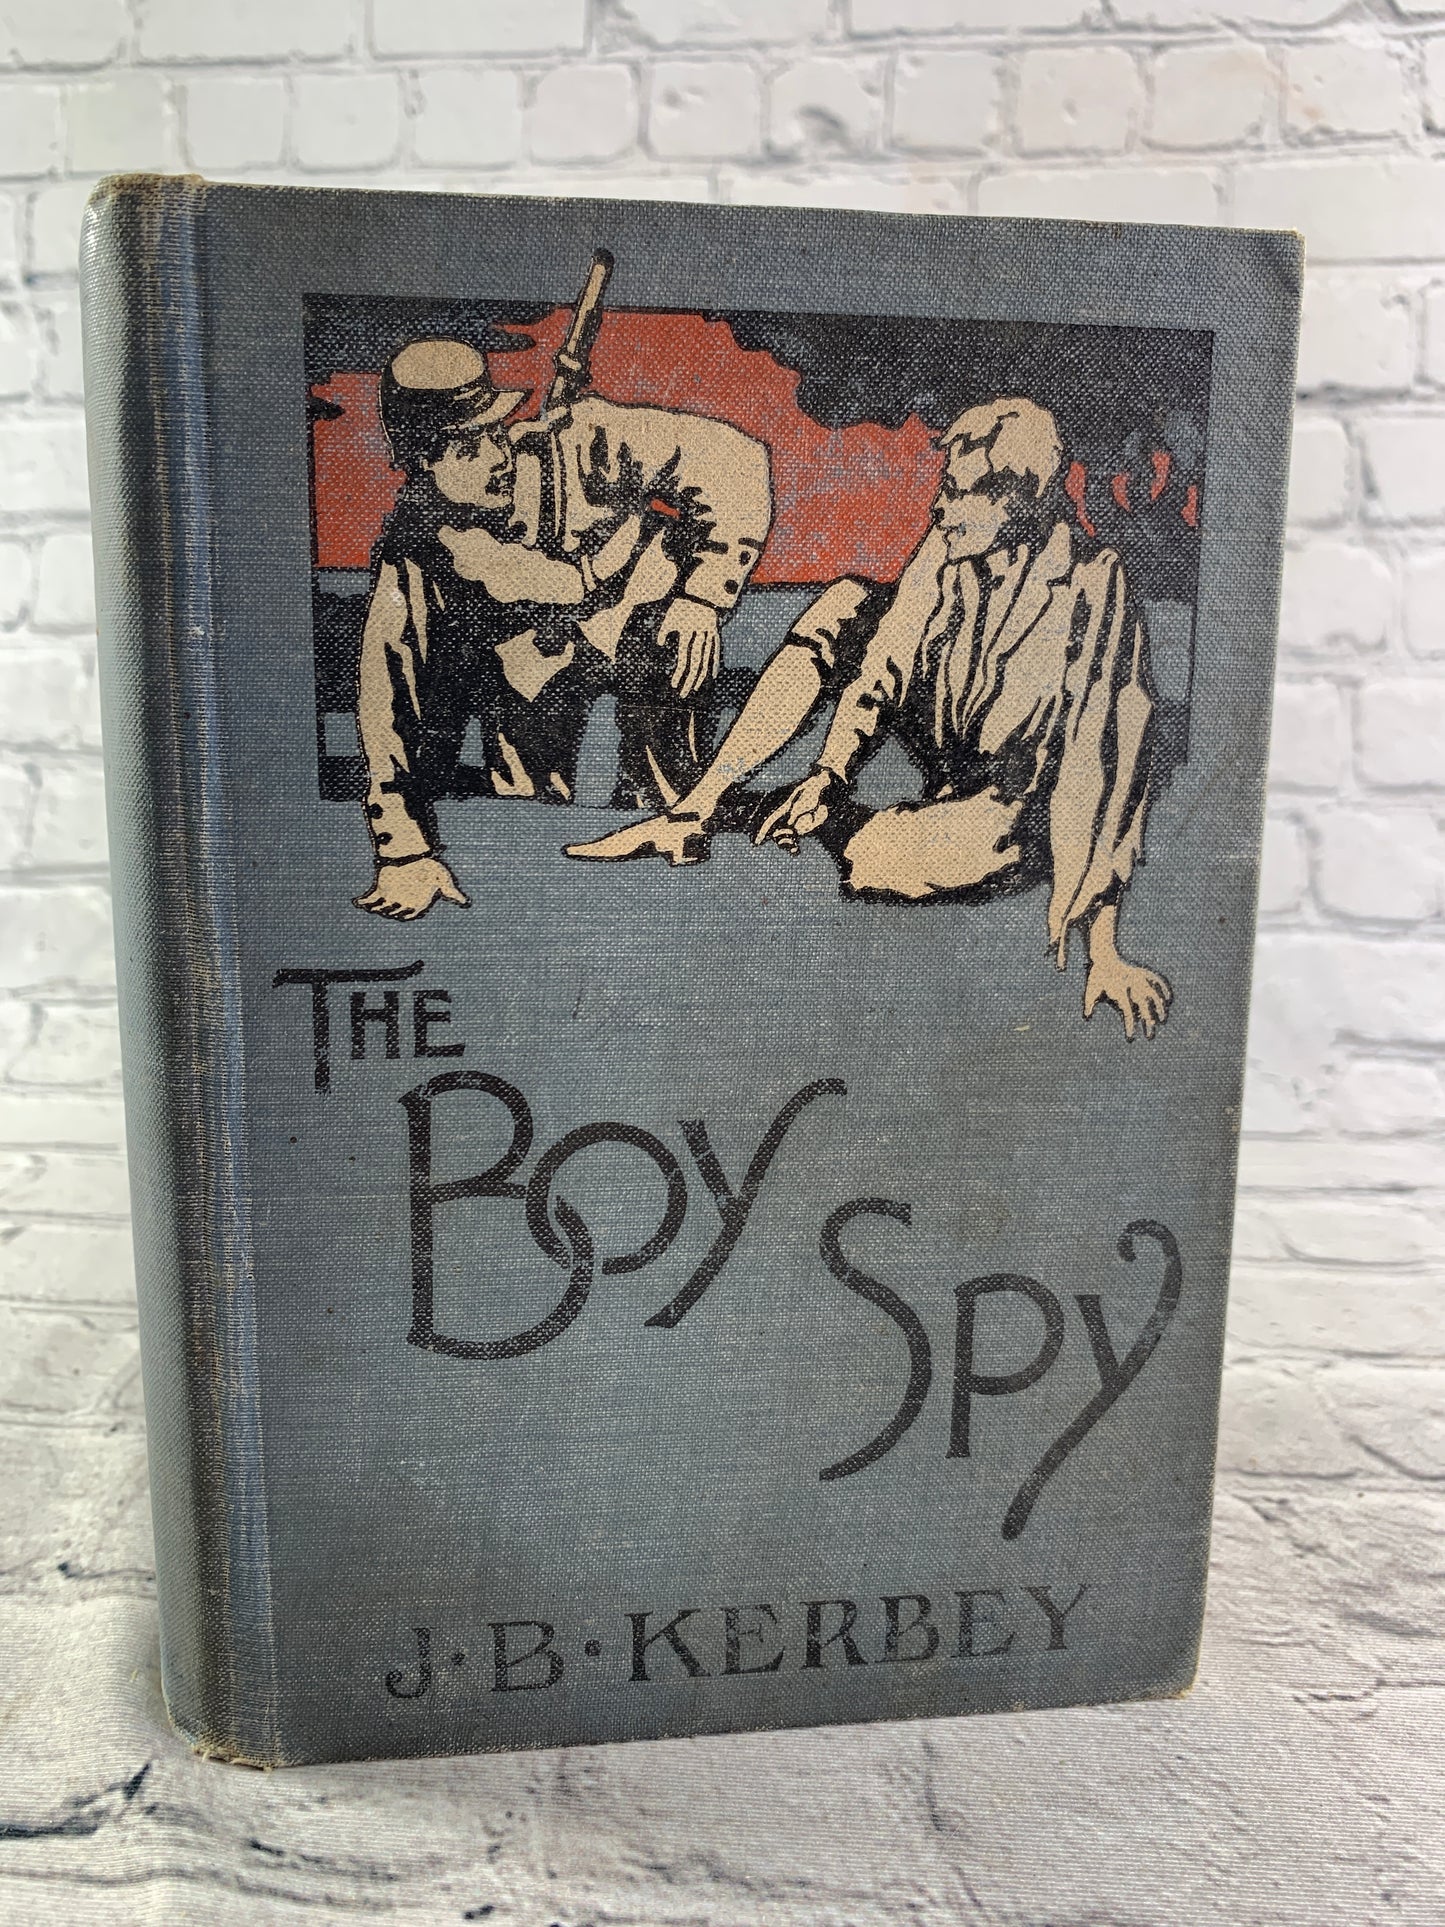 The Boy Spy by Major J.O. Kerbey [1890]